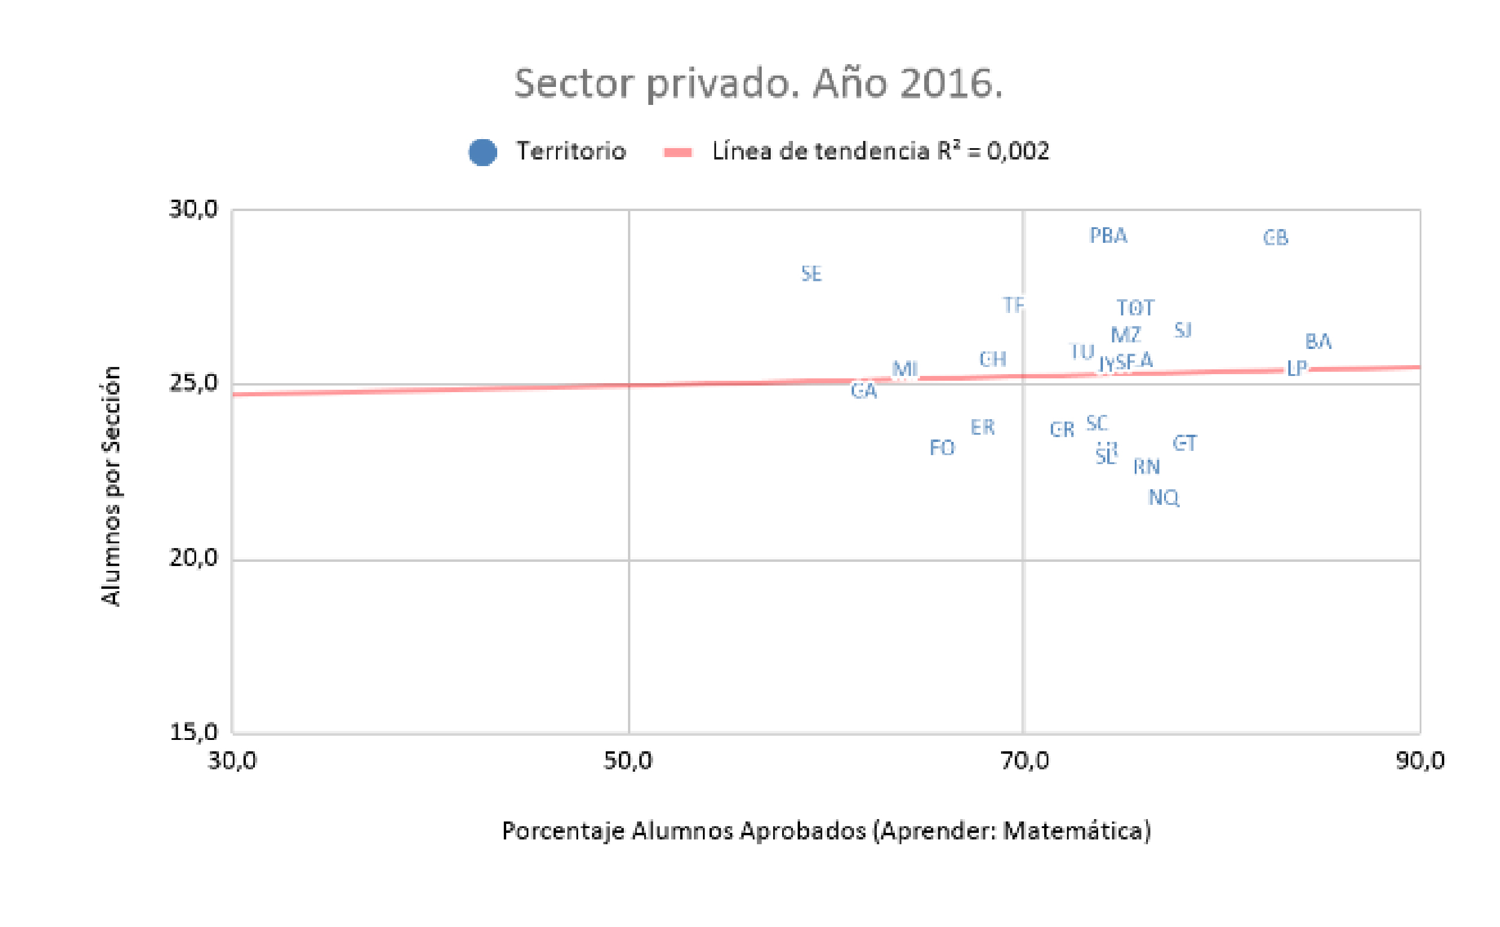 Gráfico 3.
Alumnos por sección y resultados de Aprender. Nivel primario. 
Sector privado. Total país y provincias.
Año 2016.